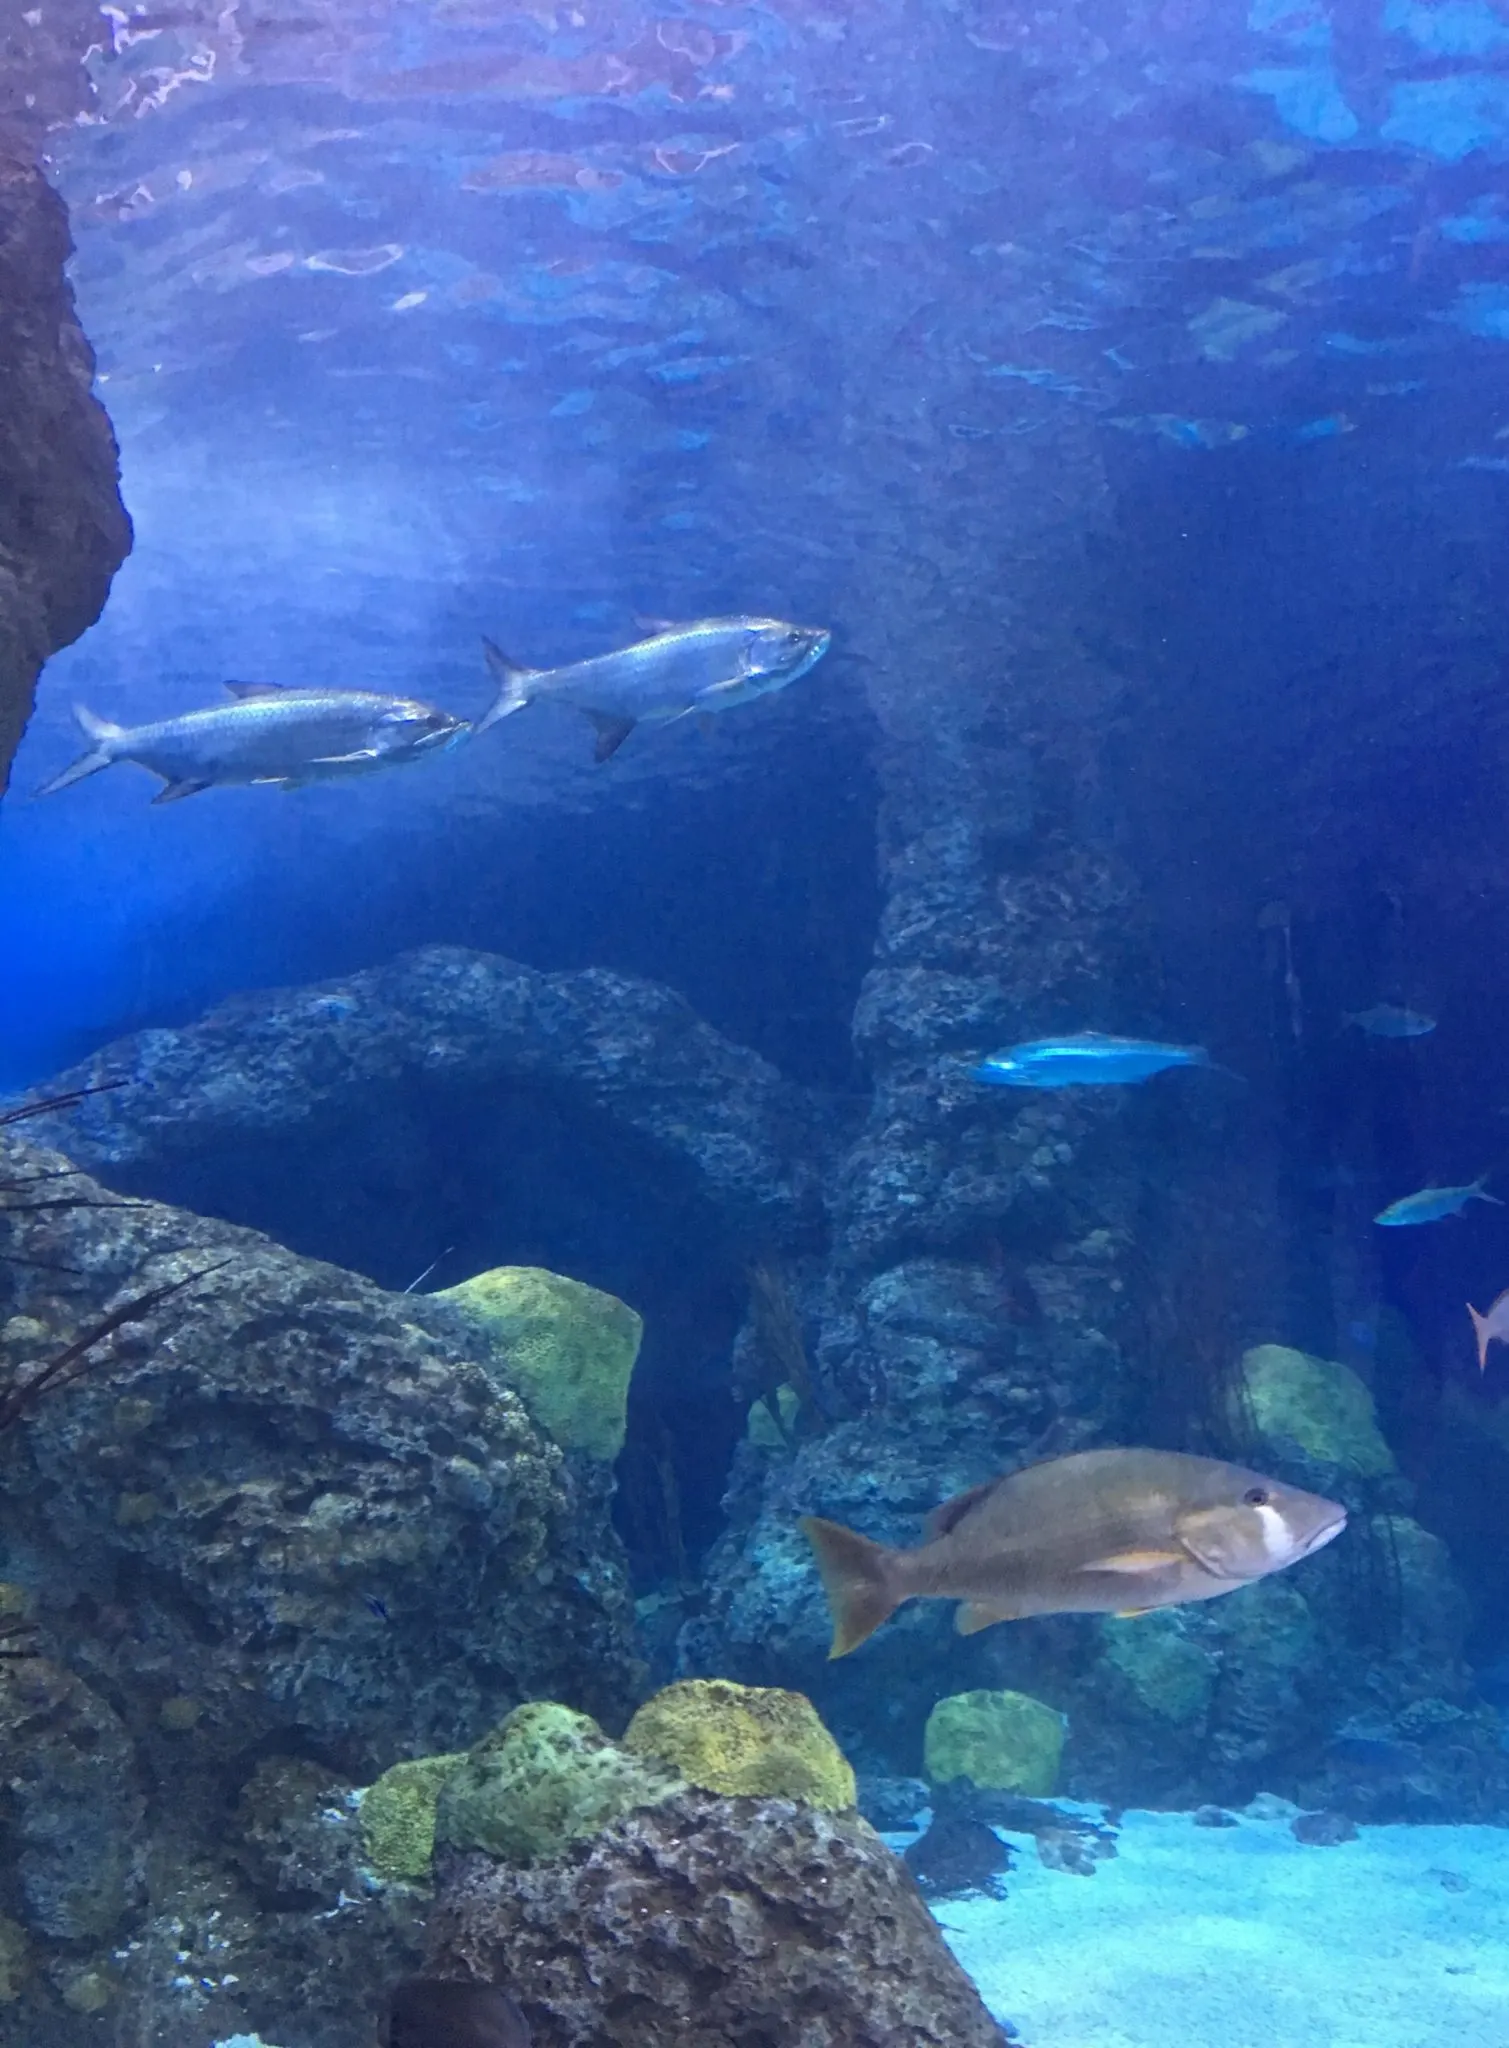 Aquarium fish, Denver Downtown Aquarium with kids